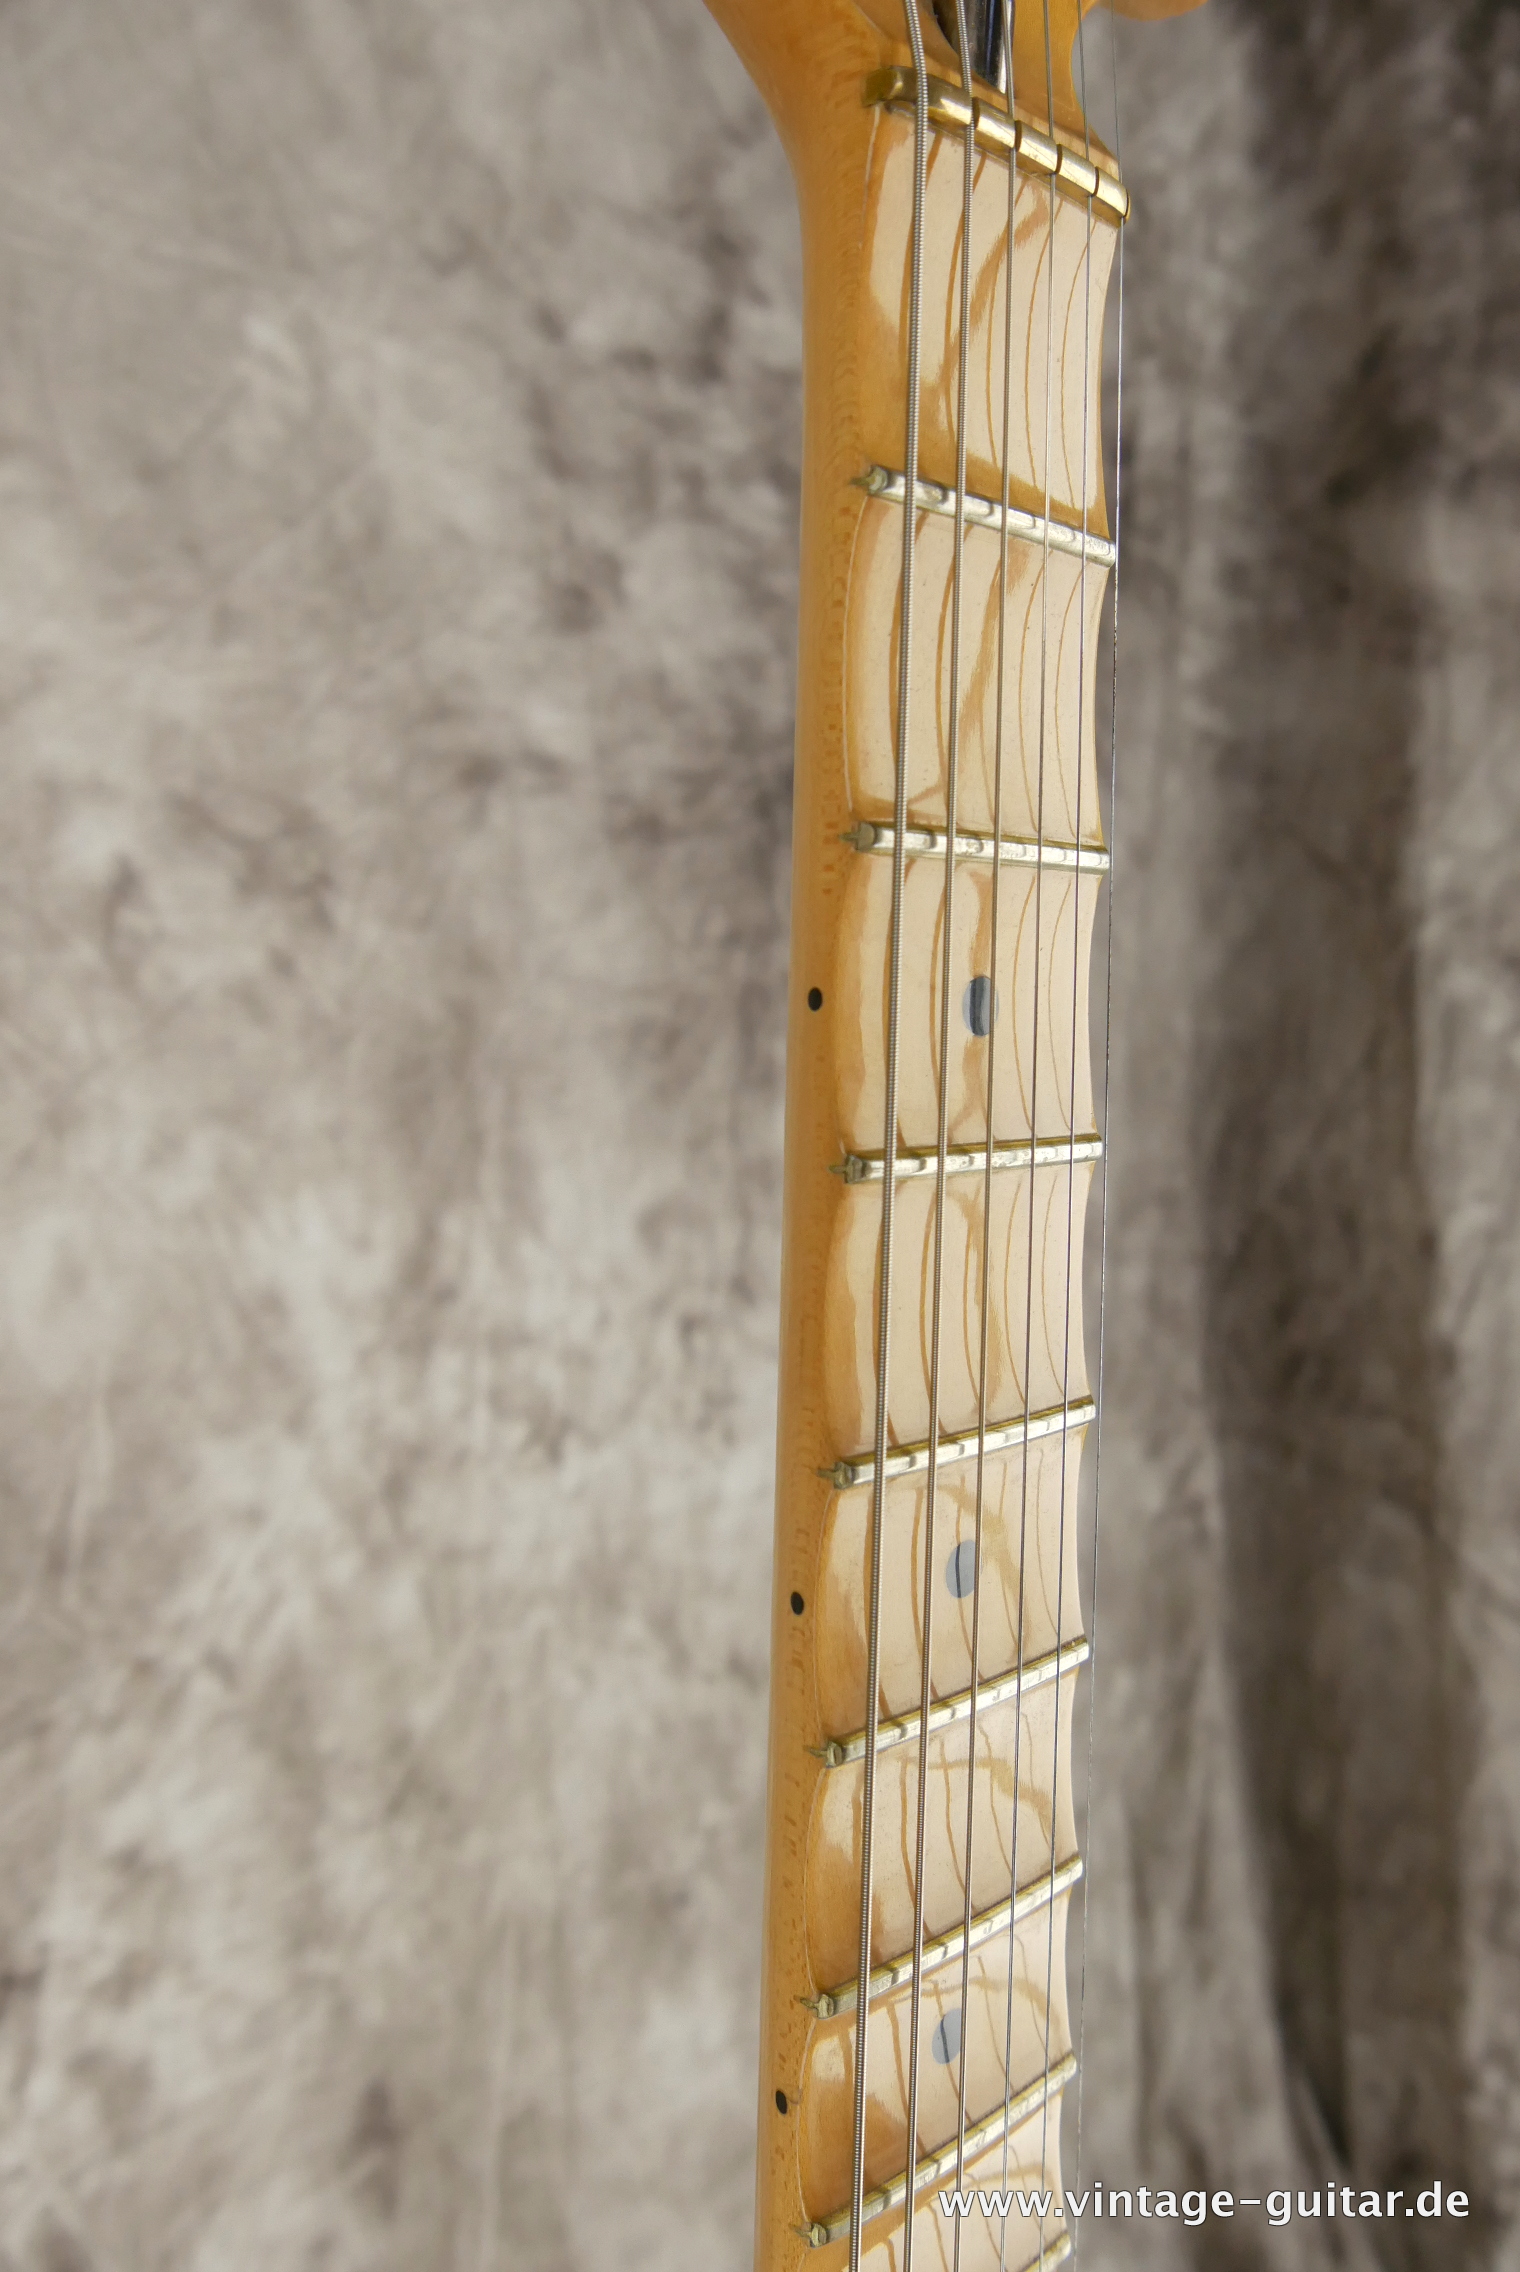 Fender-Stratocaster-Yngwie_malmsteen-2007-scalloped-009.JPG